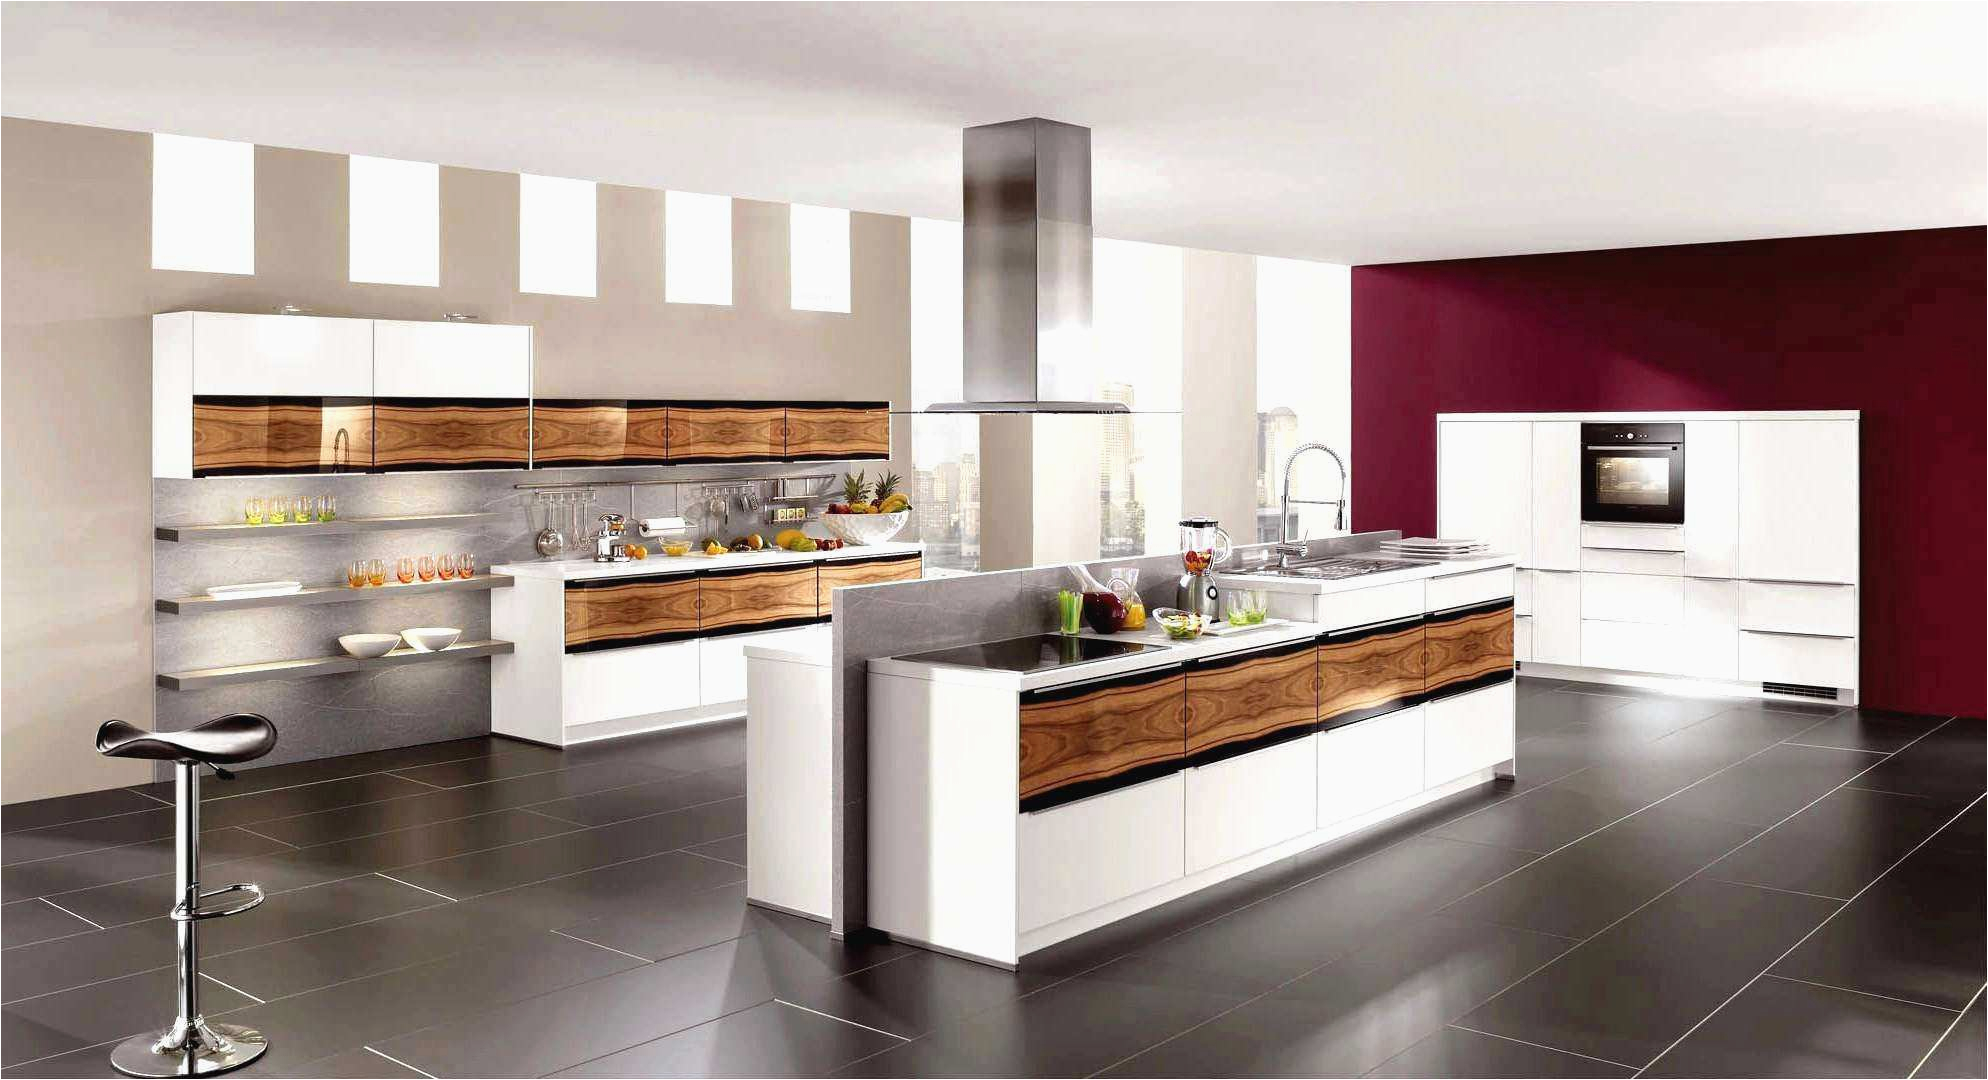 Küche Streichen Welche Farbe Ideen Wandgestaltung Mit Farbe Küche Neu 45 Beste Von Küche